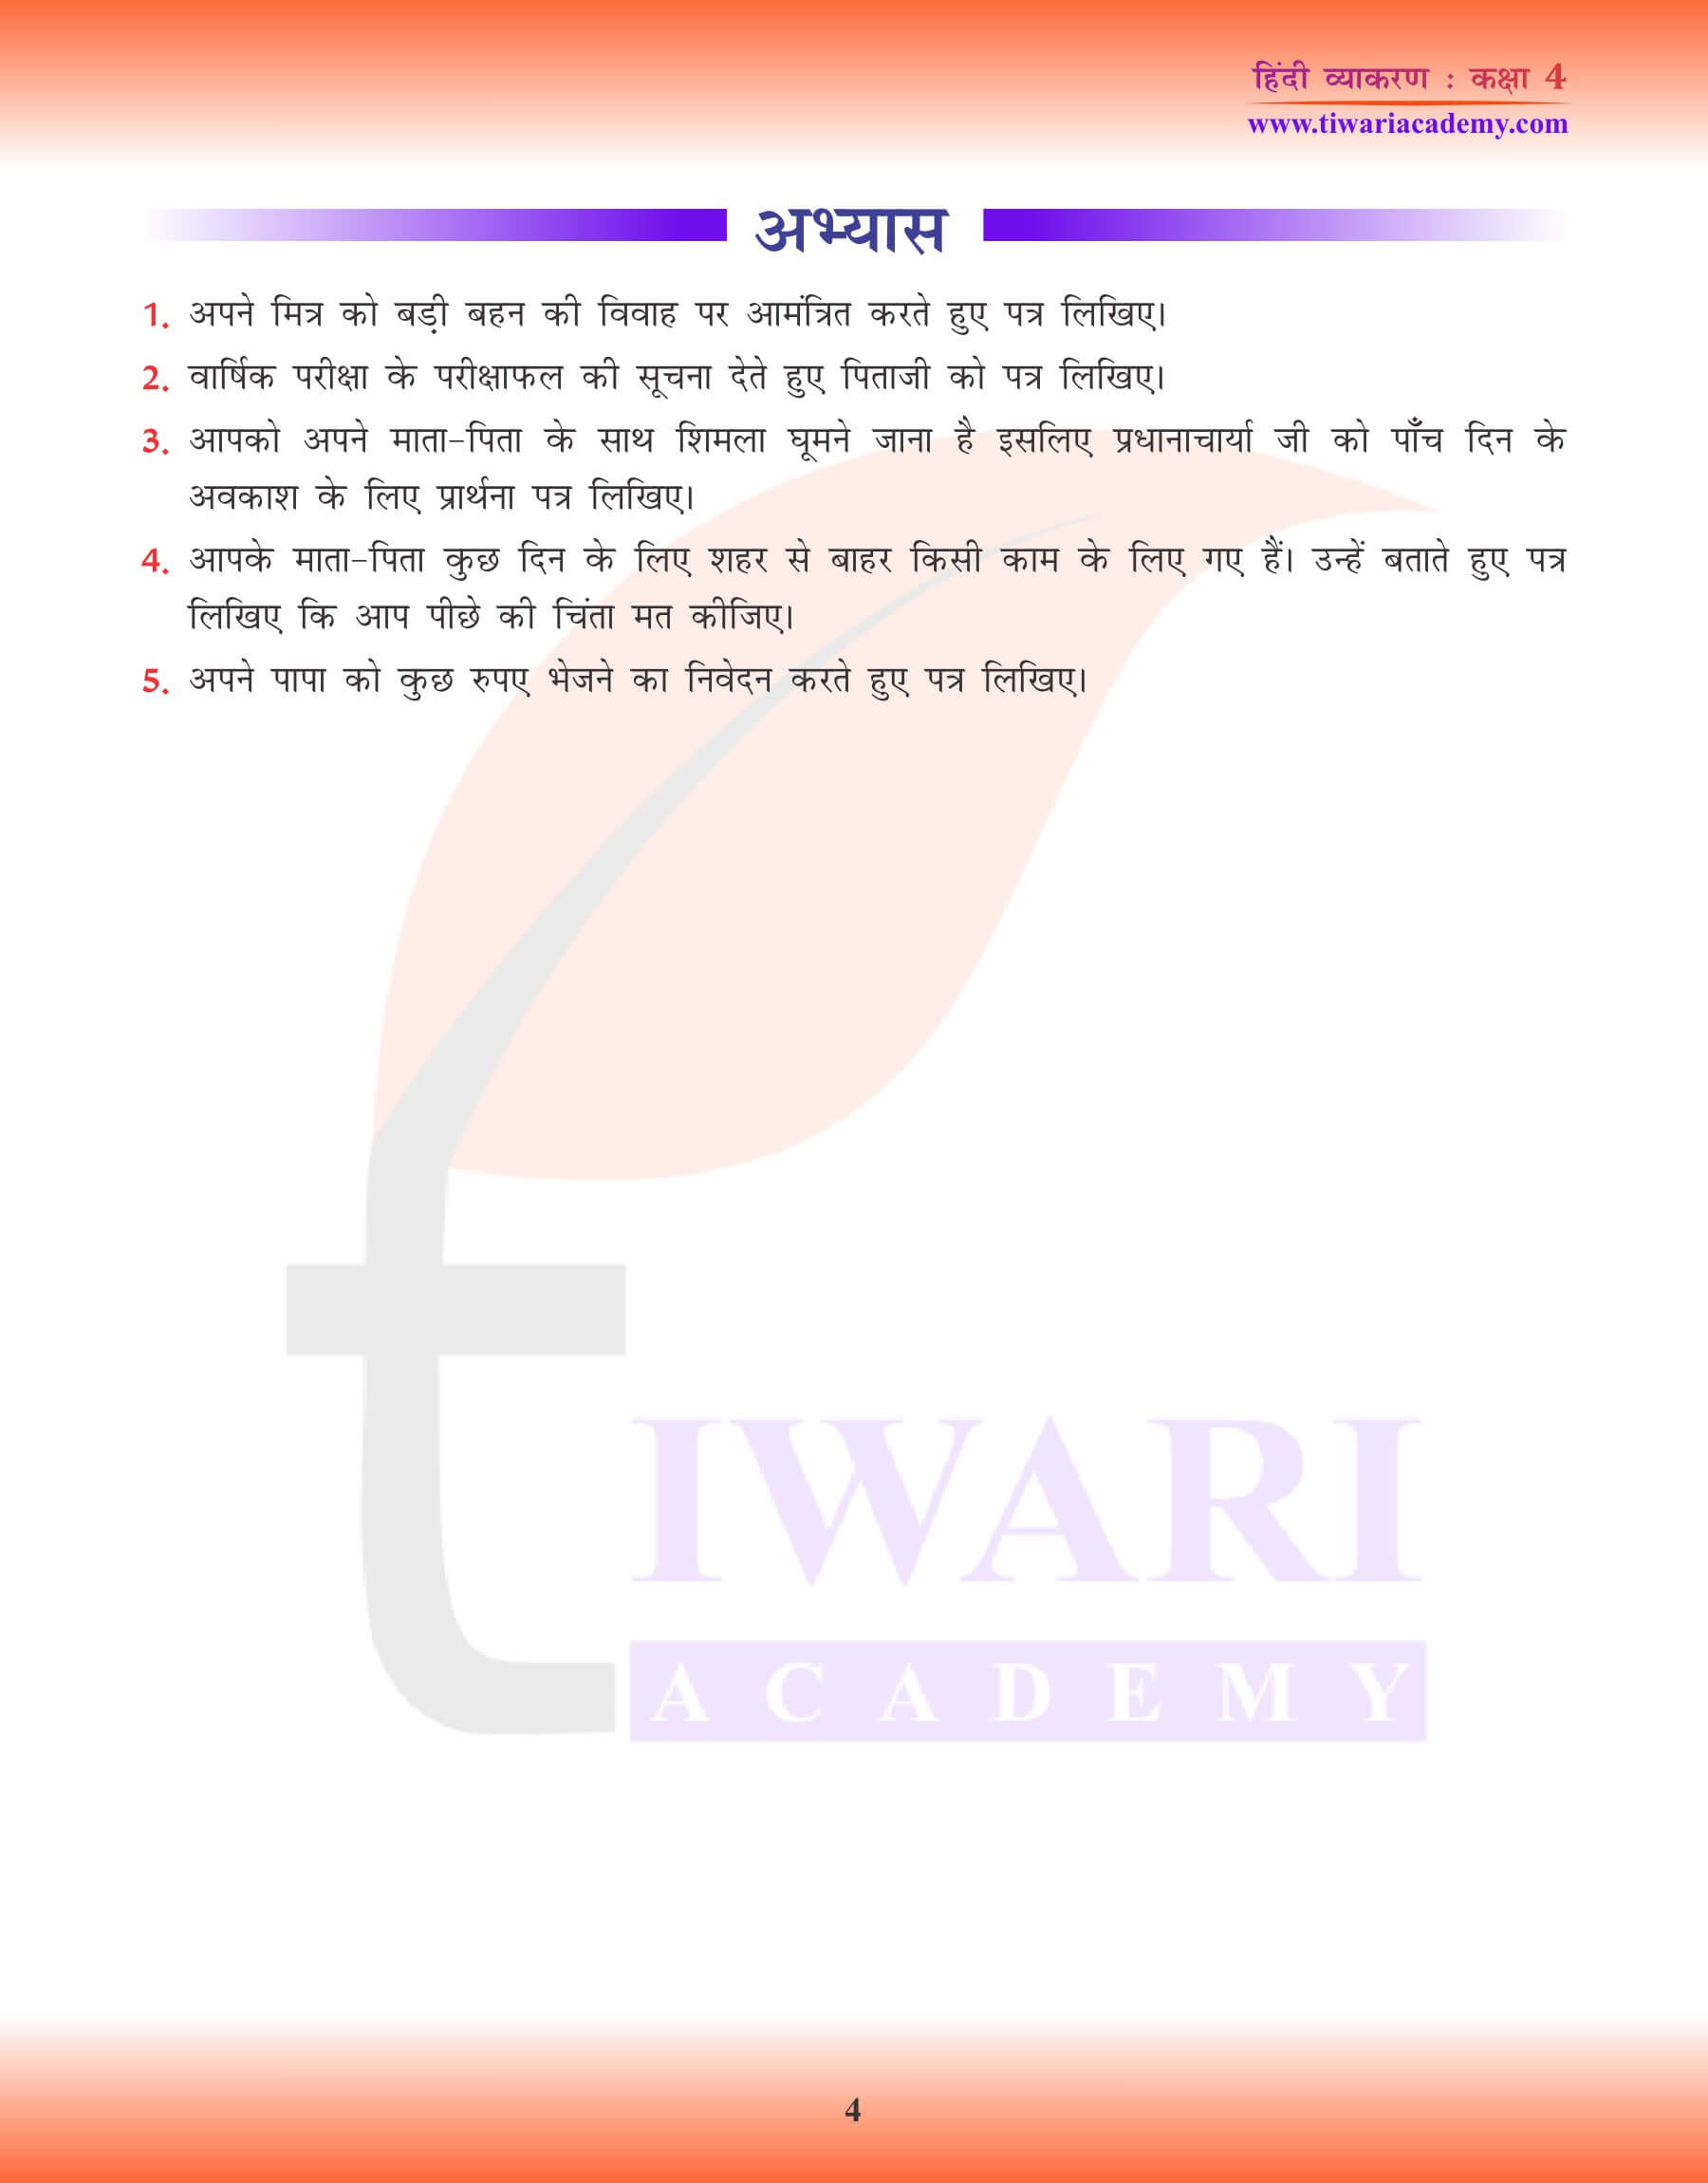 कक्षा 4 हिंदी व्याकरण में पत्र लेखन अभ्यास प्रश्न